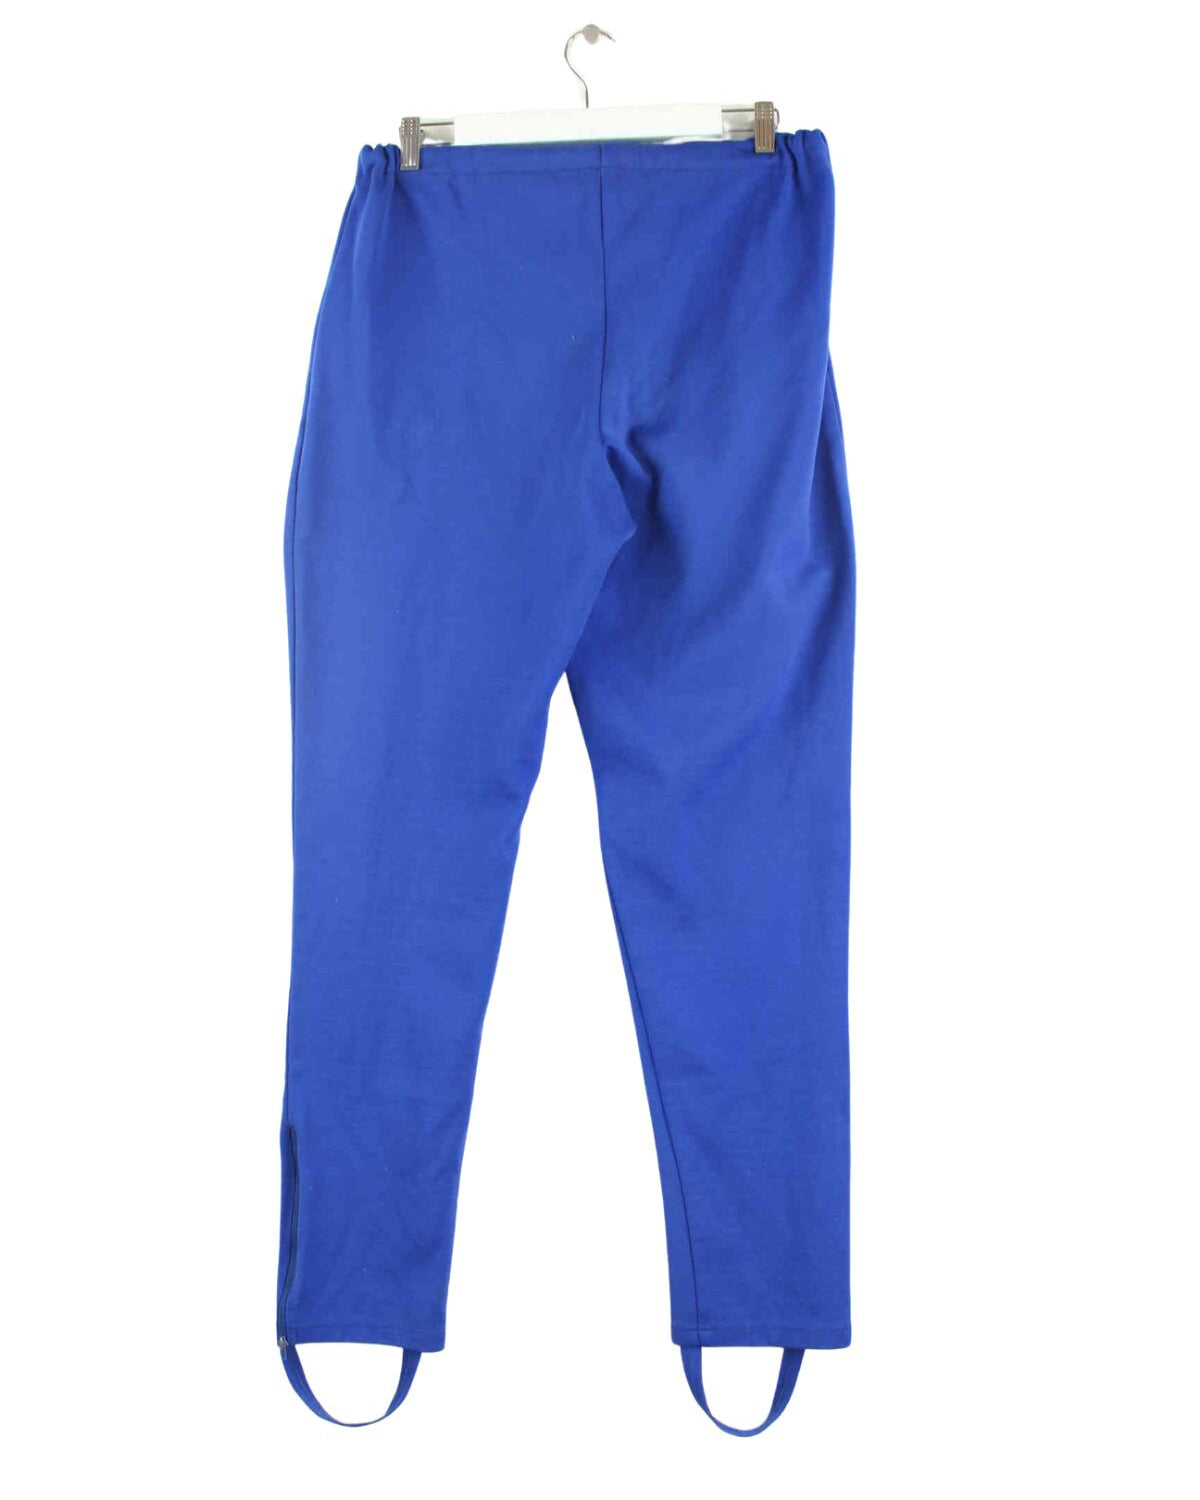 Adidas 90s Vintage Embroidered Track Pants Blau S (back image)